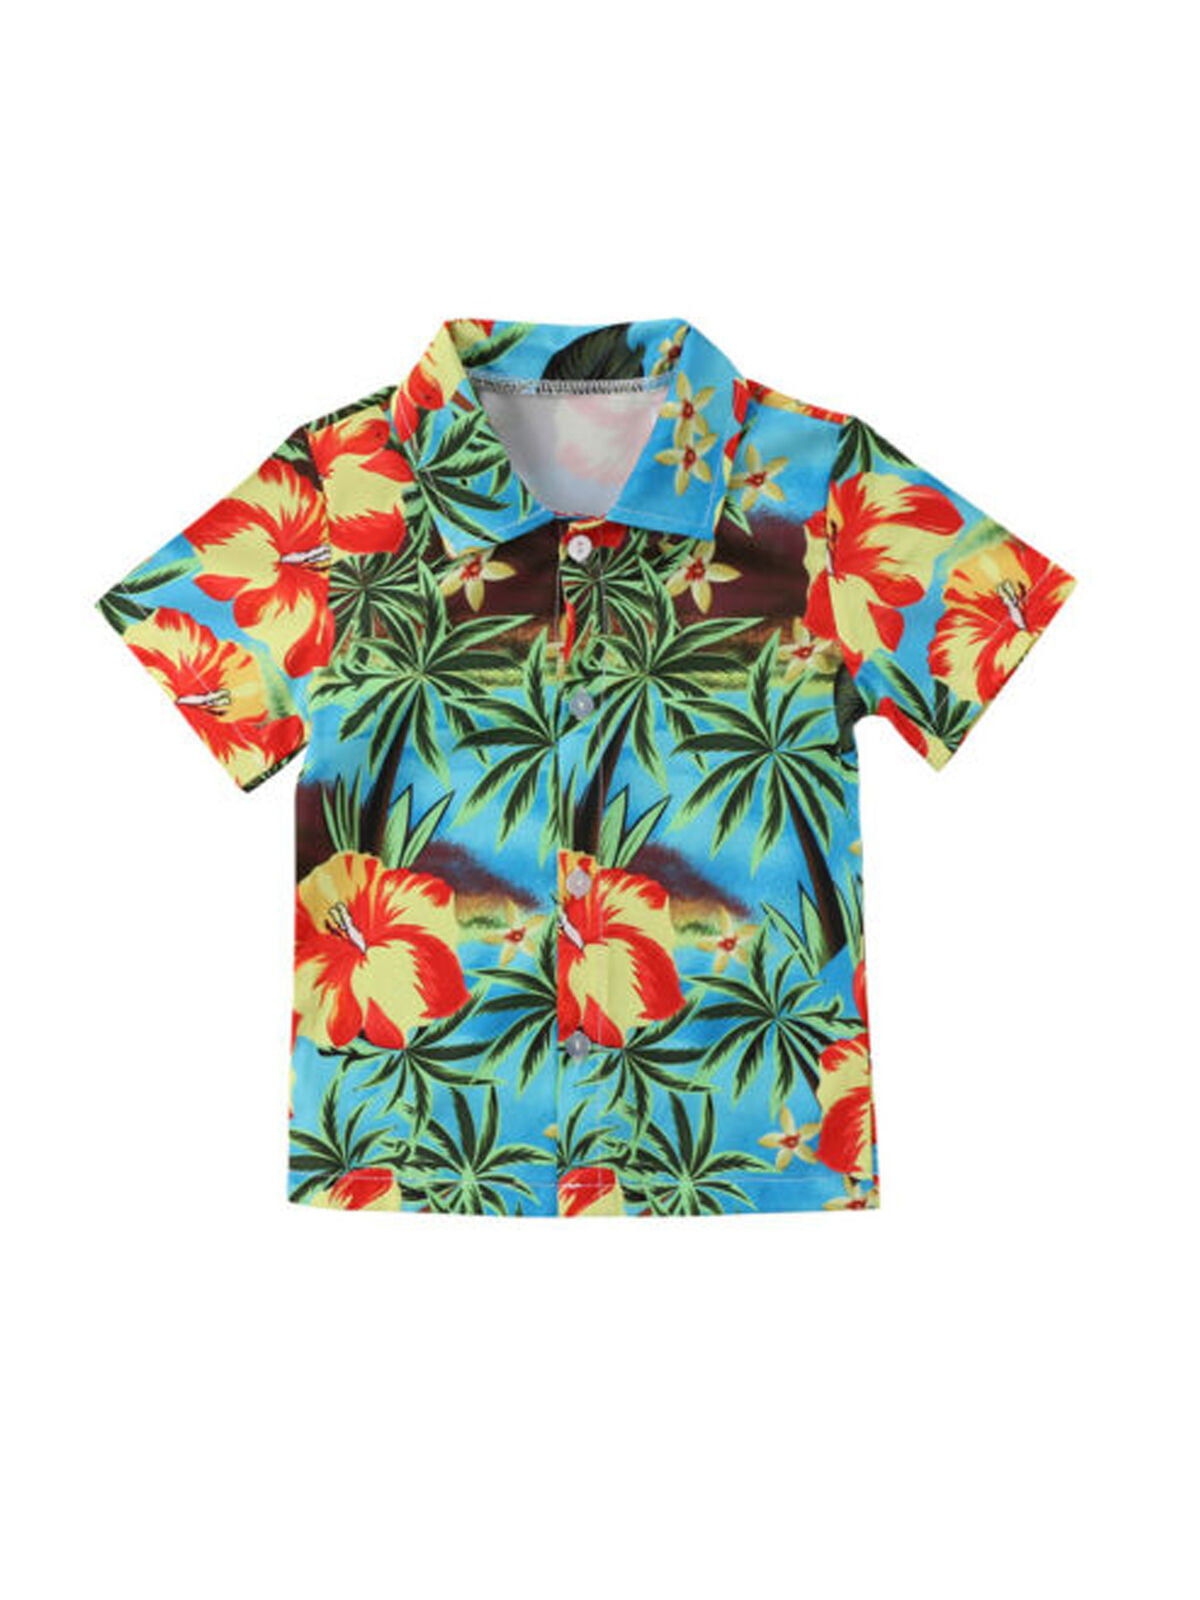 Kids Unisex Hawaiian Shirts Sunset Range Aloha Party Clothing